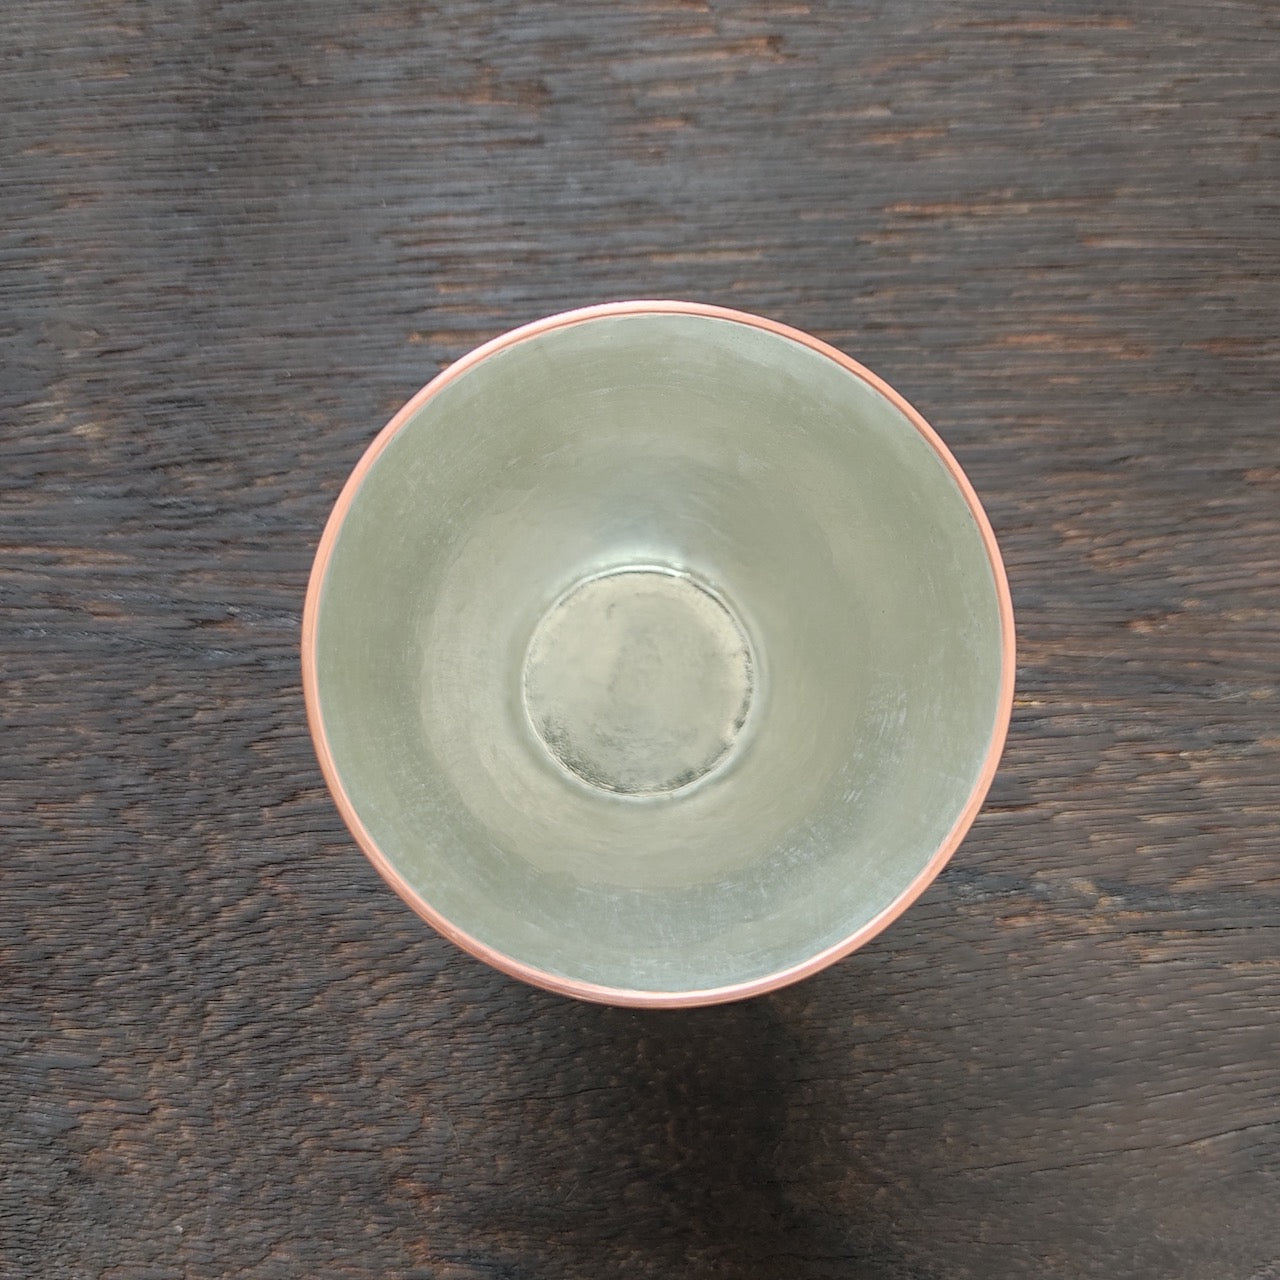 Sake cup - 120